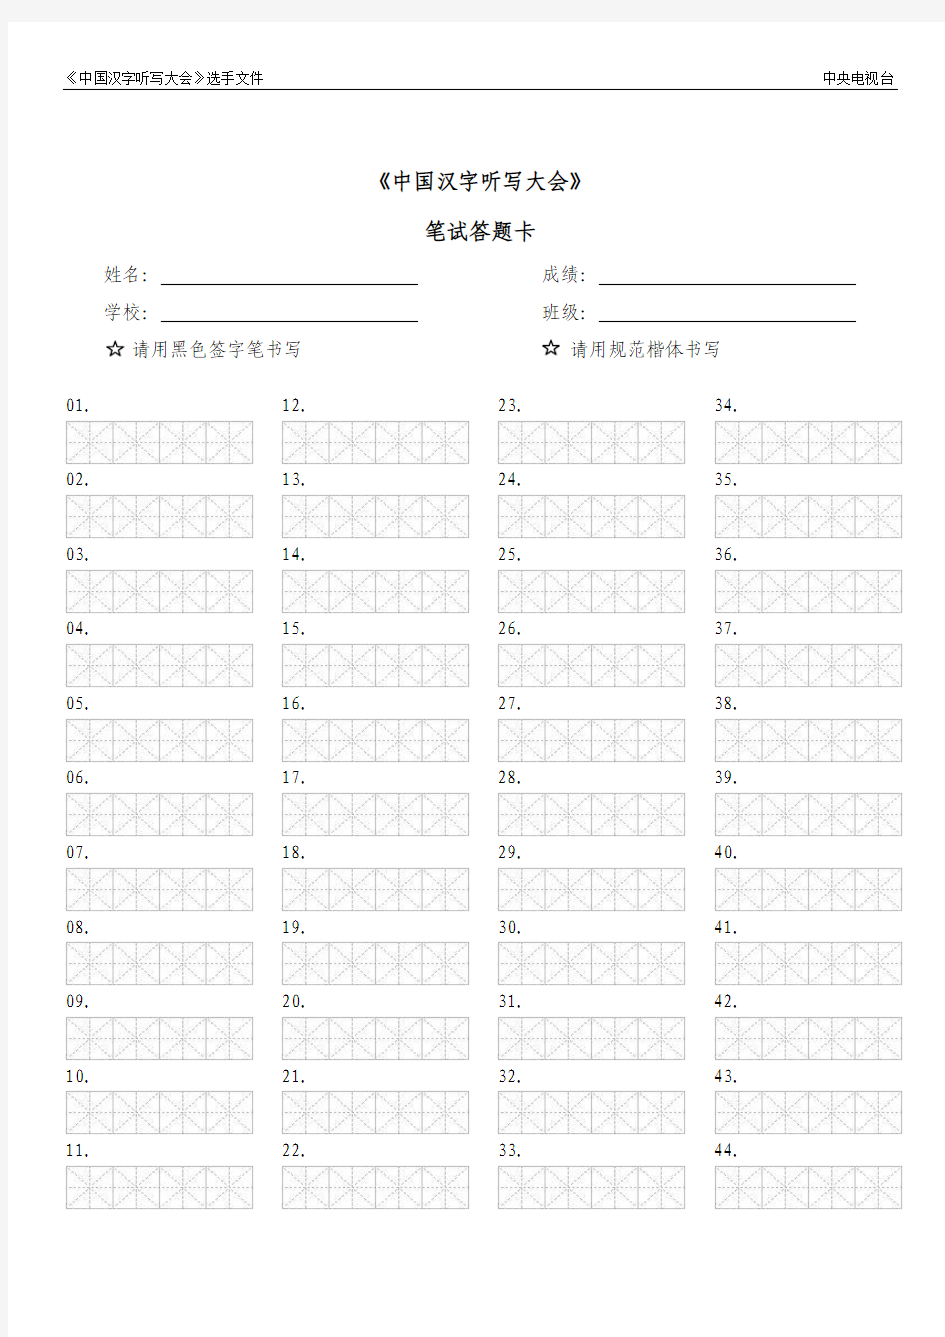 《中国汉字听写大会》考试答题纸0423